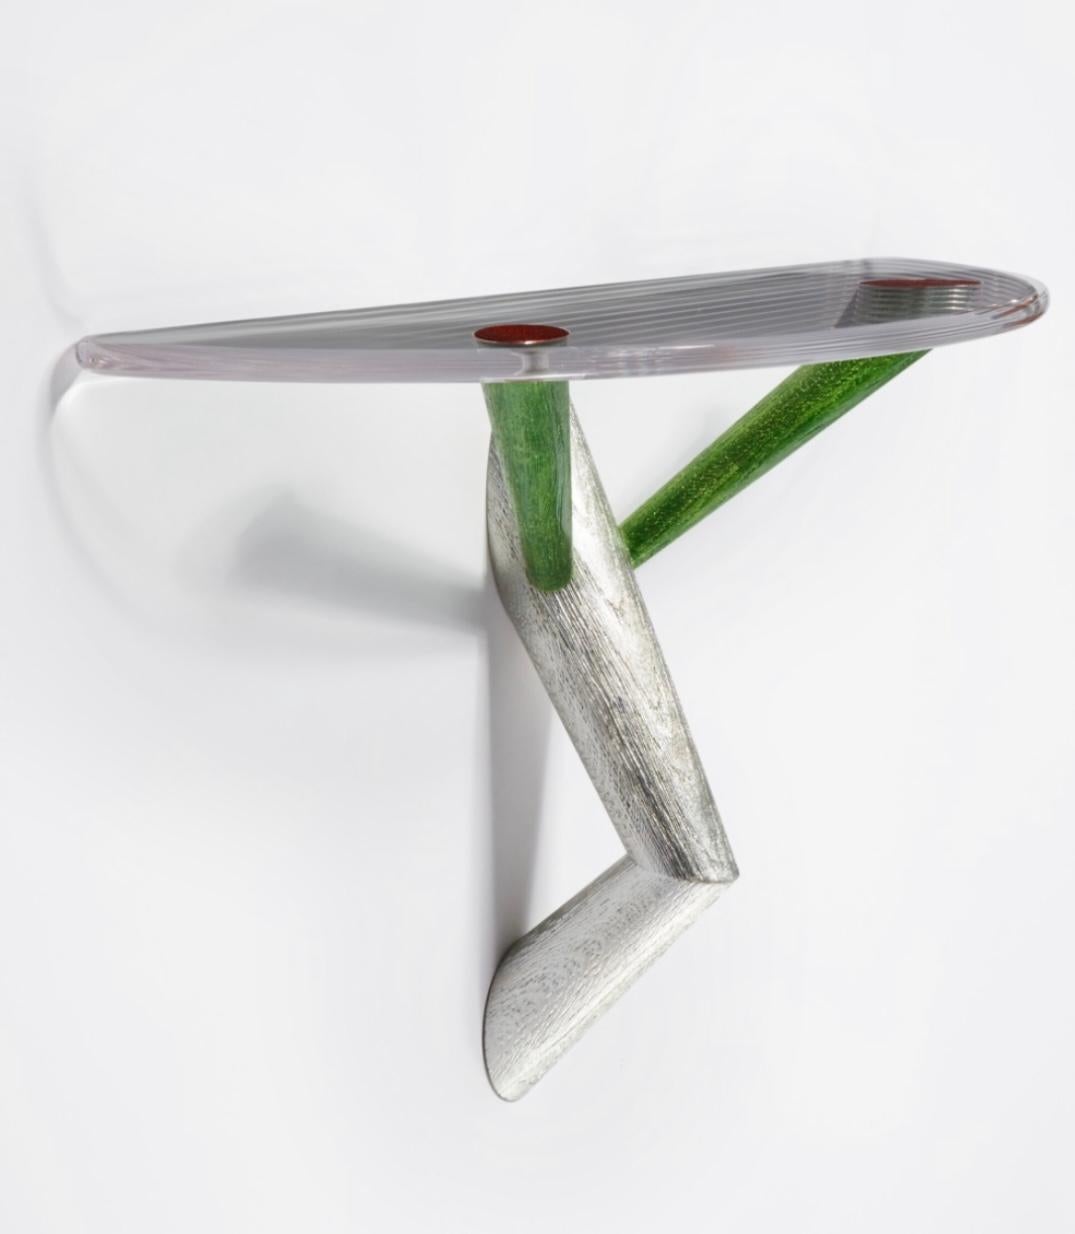 La Portman Gallery propose :

Mattia Bonetti
Table console de chambre 